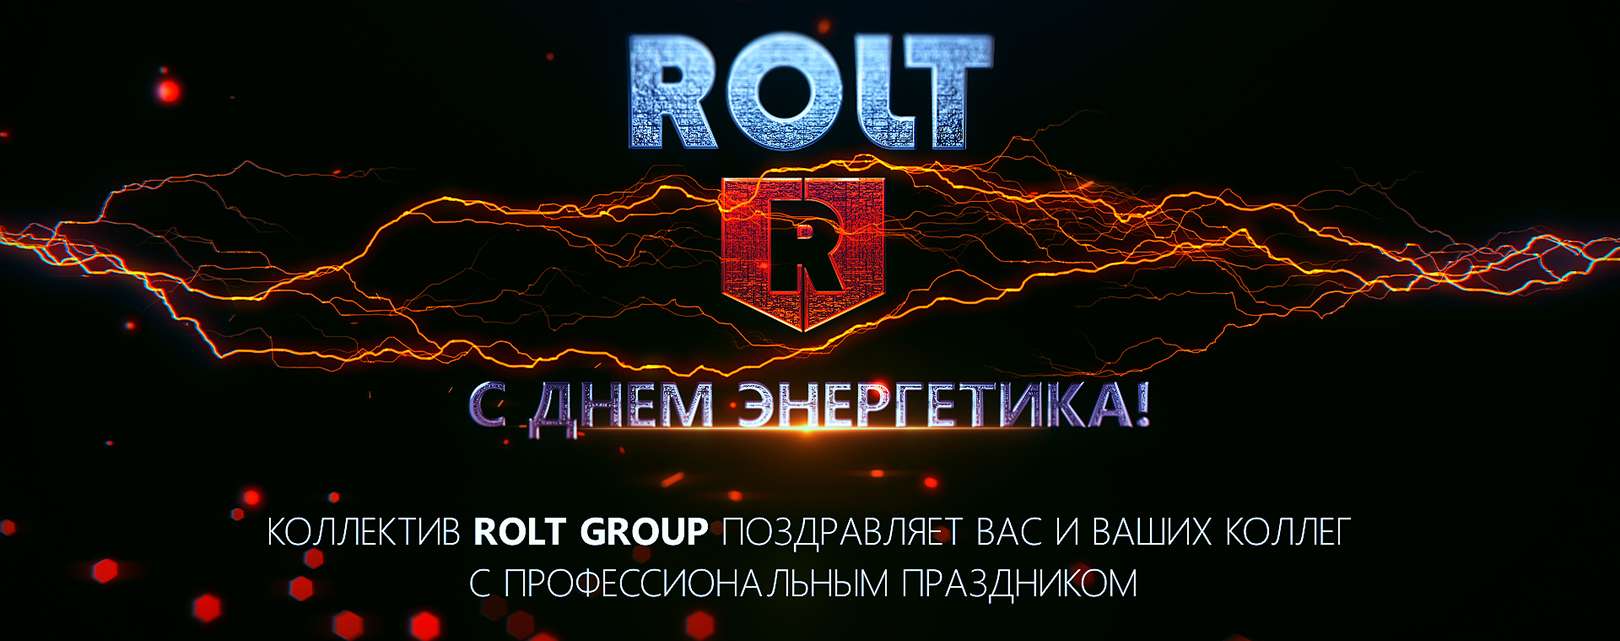 Коллектив ROLT group поздравляет с днем энергетика.